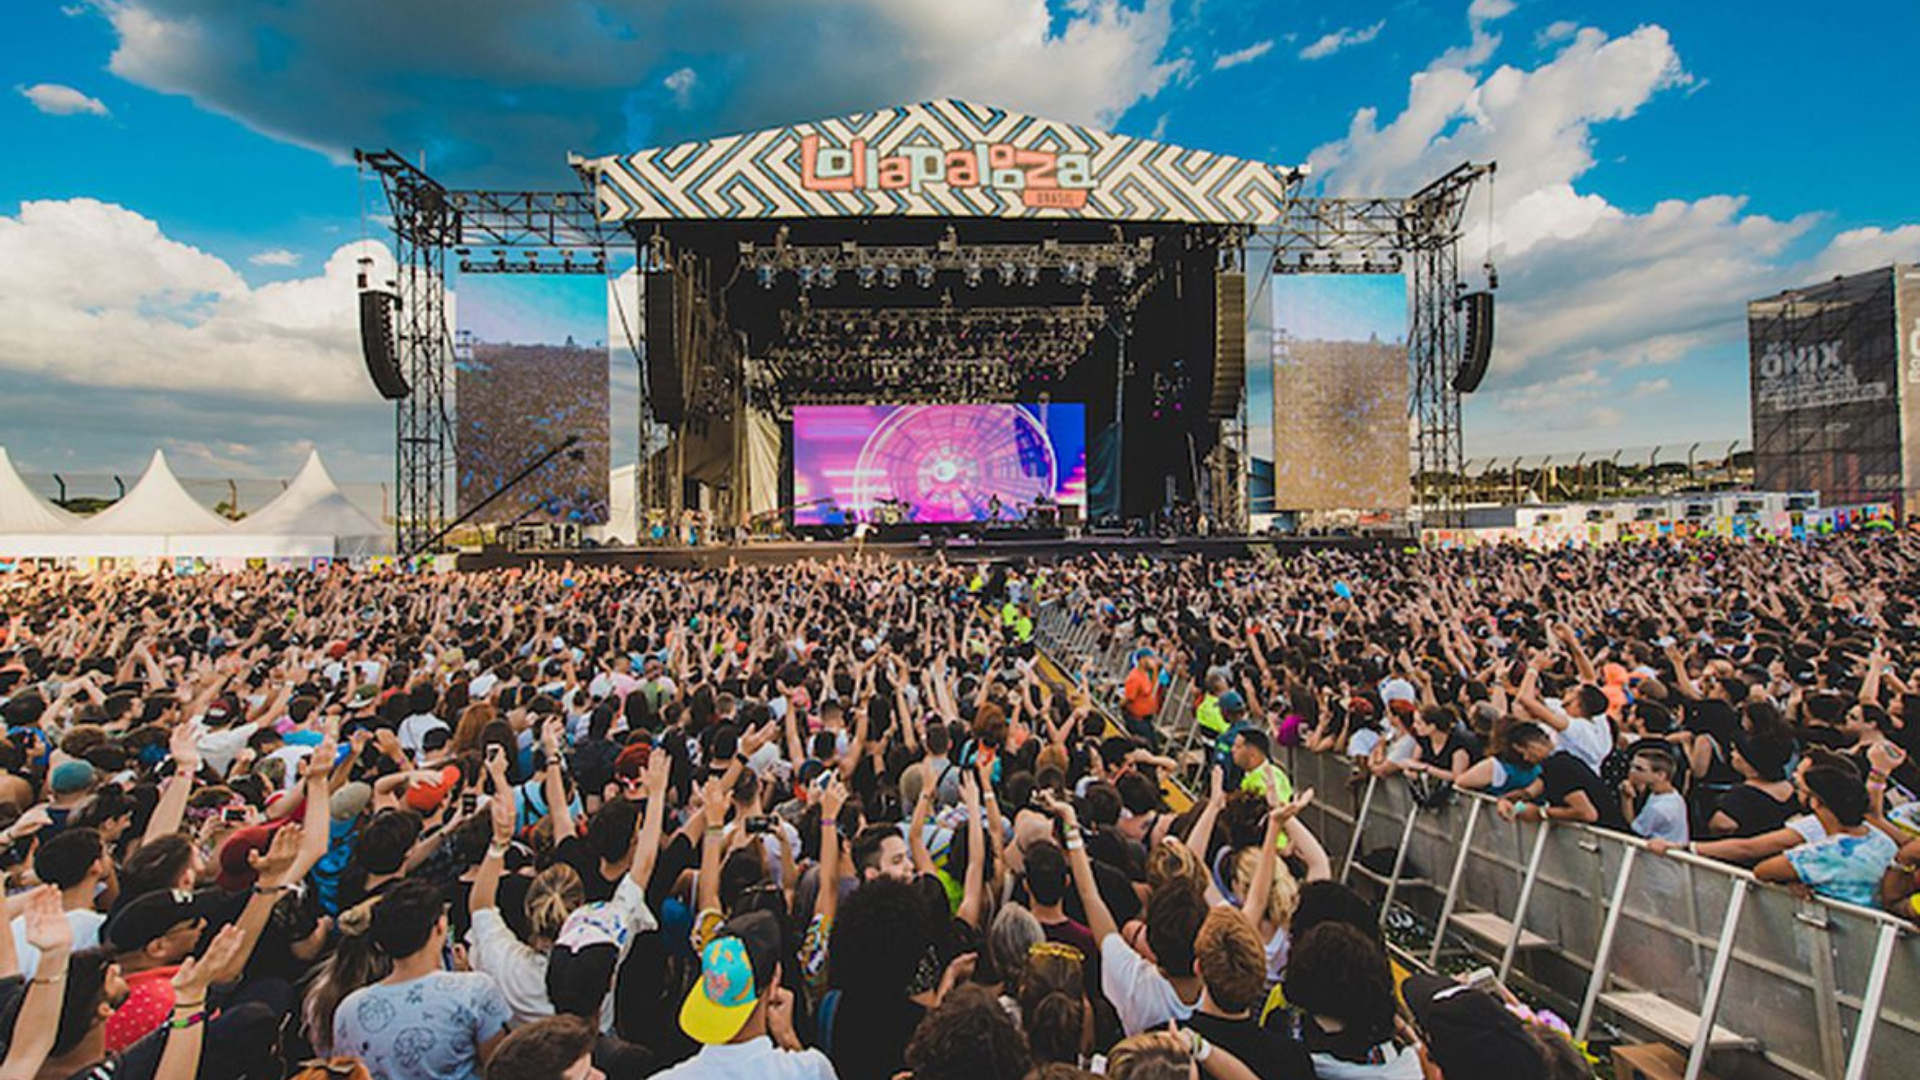 Empresa que organiza Lollapalooza recorre na justiça após censura do TSE. Foto da vista de um palco do festival com os participantes levantando as mãos para cima.